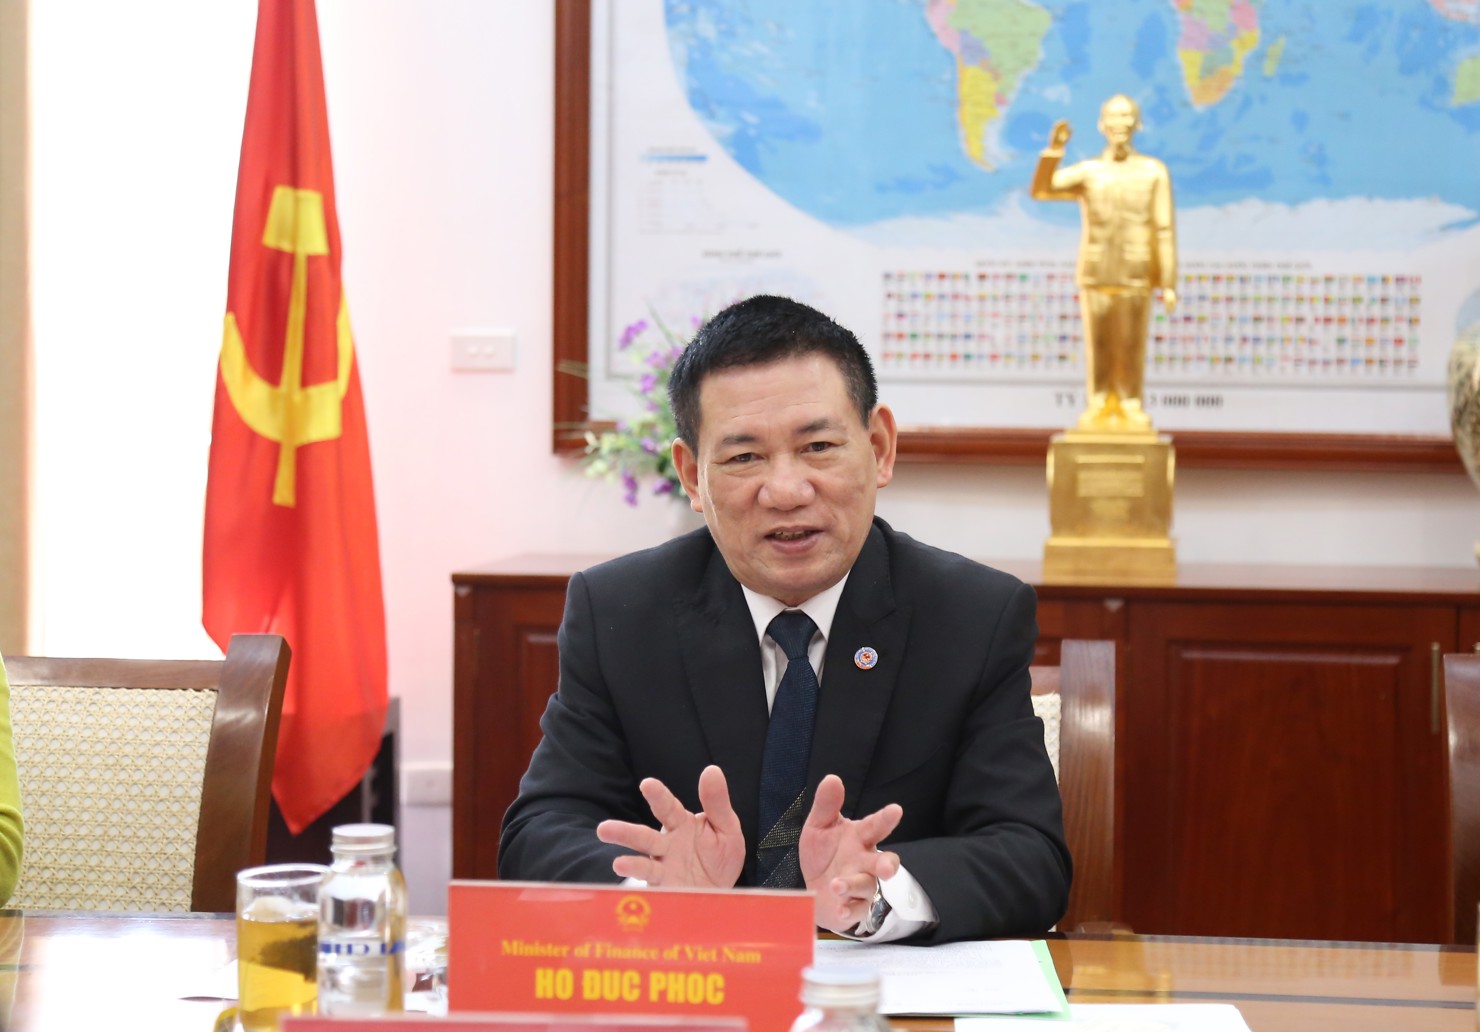 Bộ trưởng Bộ Tài chính Hồ Đức Phớc đánh giá cao sự hỗ trợ của JICA đối với Chính phủ Việt Nam nói chung và Bộ Tài chính nói riêng.